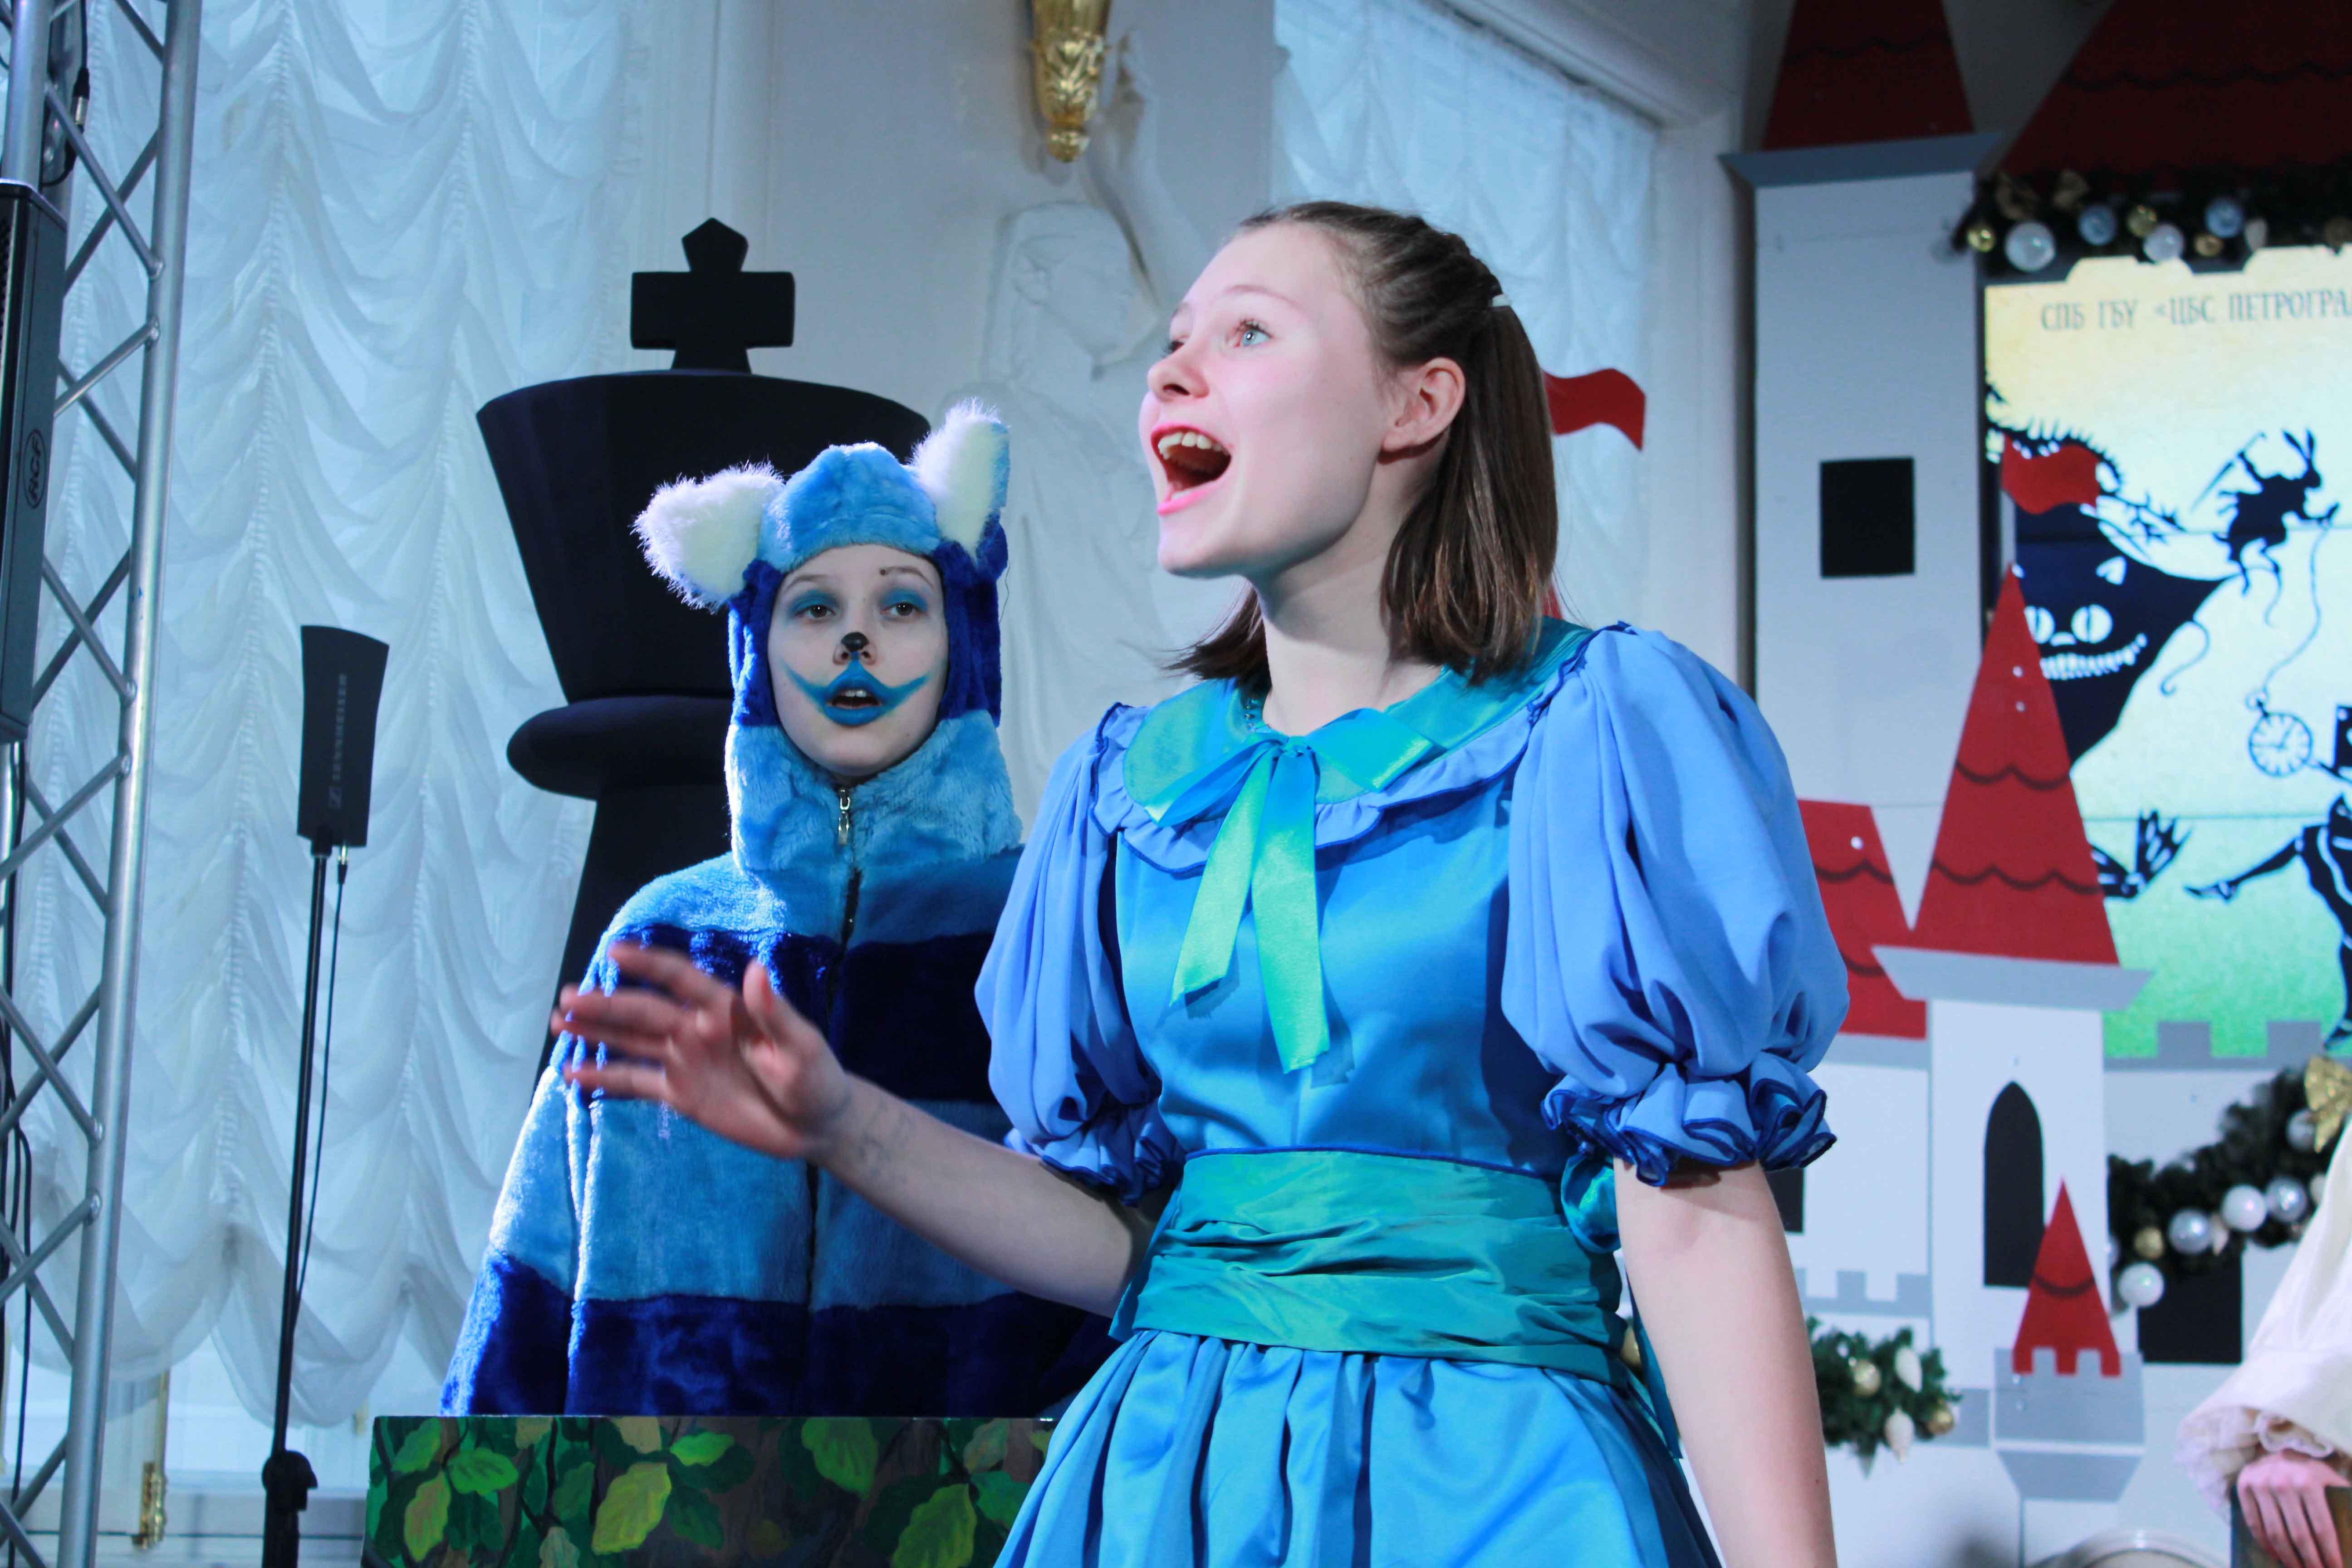 «Алиса в стране чудес» стала первым ярким событием «Рождественских музыкальных встреч» в рамках уже ставшего традиционным Фестиваля POMIR, задуманного его художественным руководителем Евгенией Наливкиной и Библиотекой на Карповке ​​​​​​​